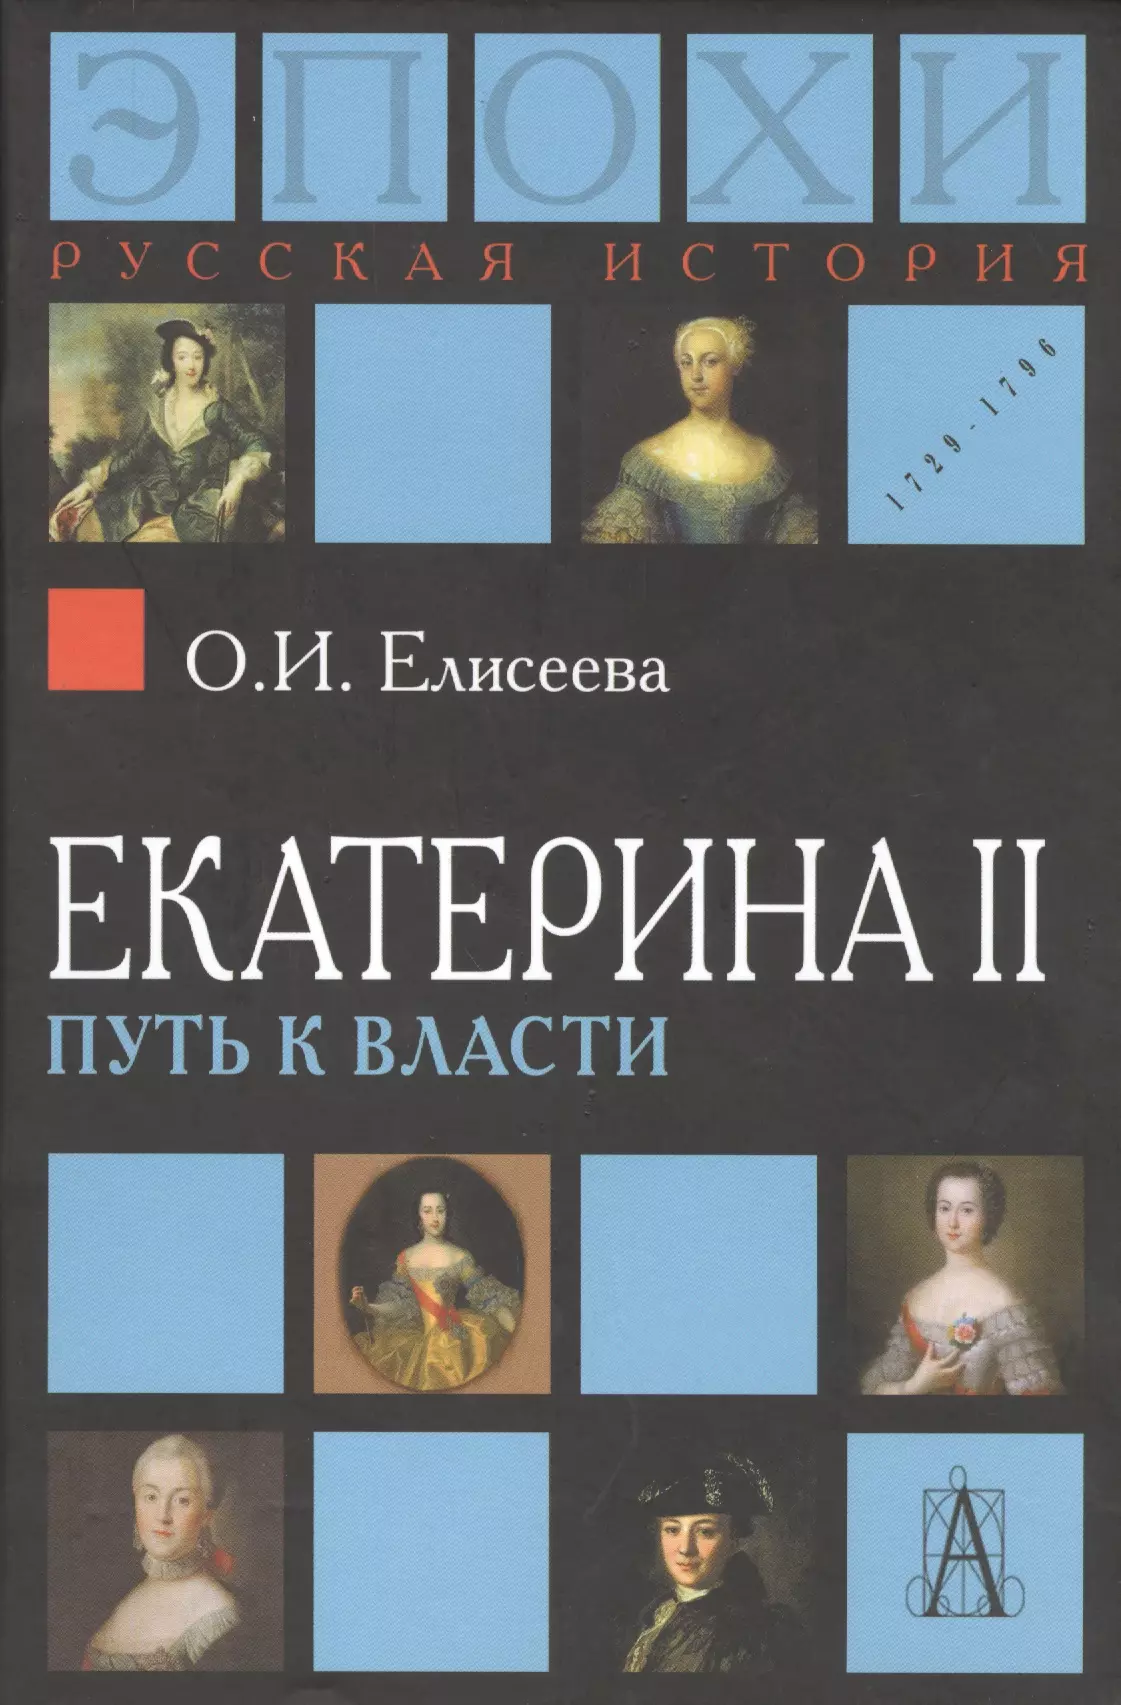 Елисеева Ольга Игоревна - Екатерина II. Путь к власти. 2-е издание